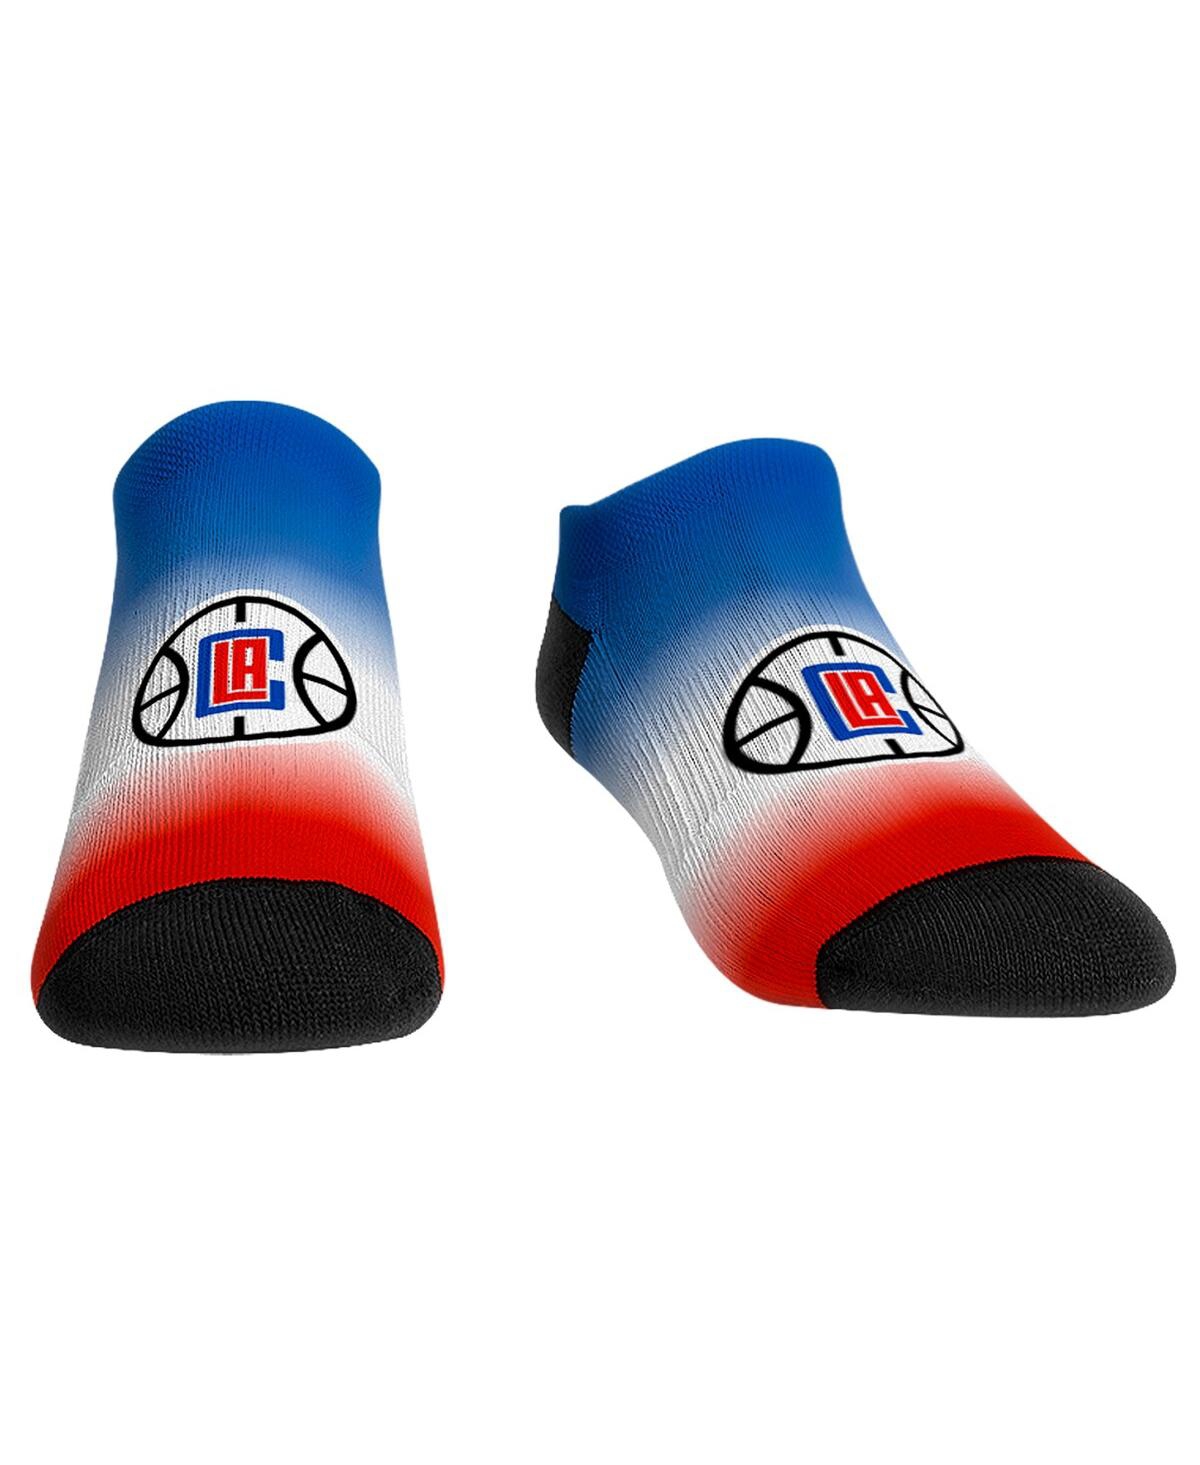 Women's Rock 'Em Socks La Clippers Dip-Dye Ankle Socks - Multi